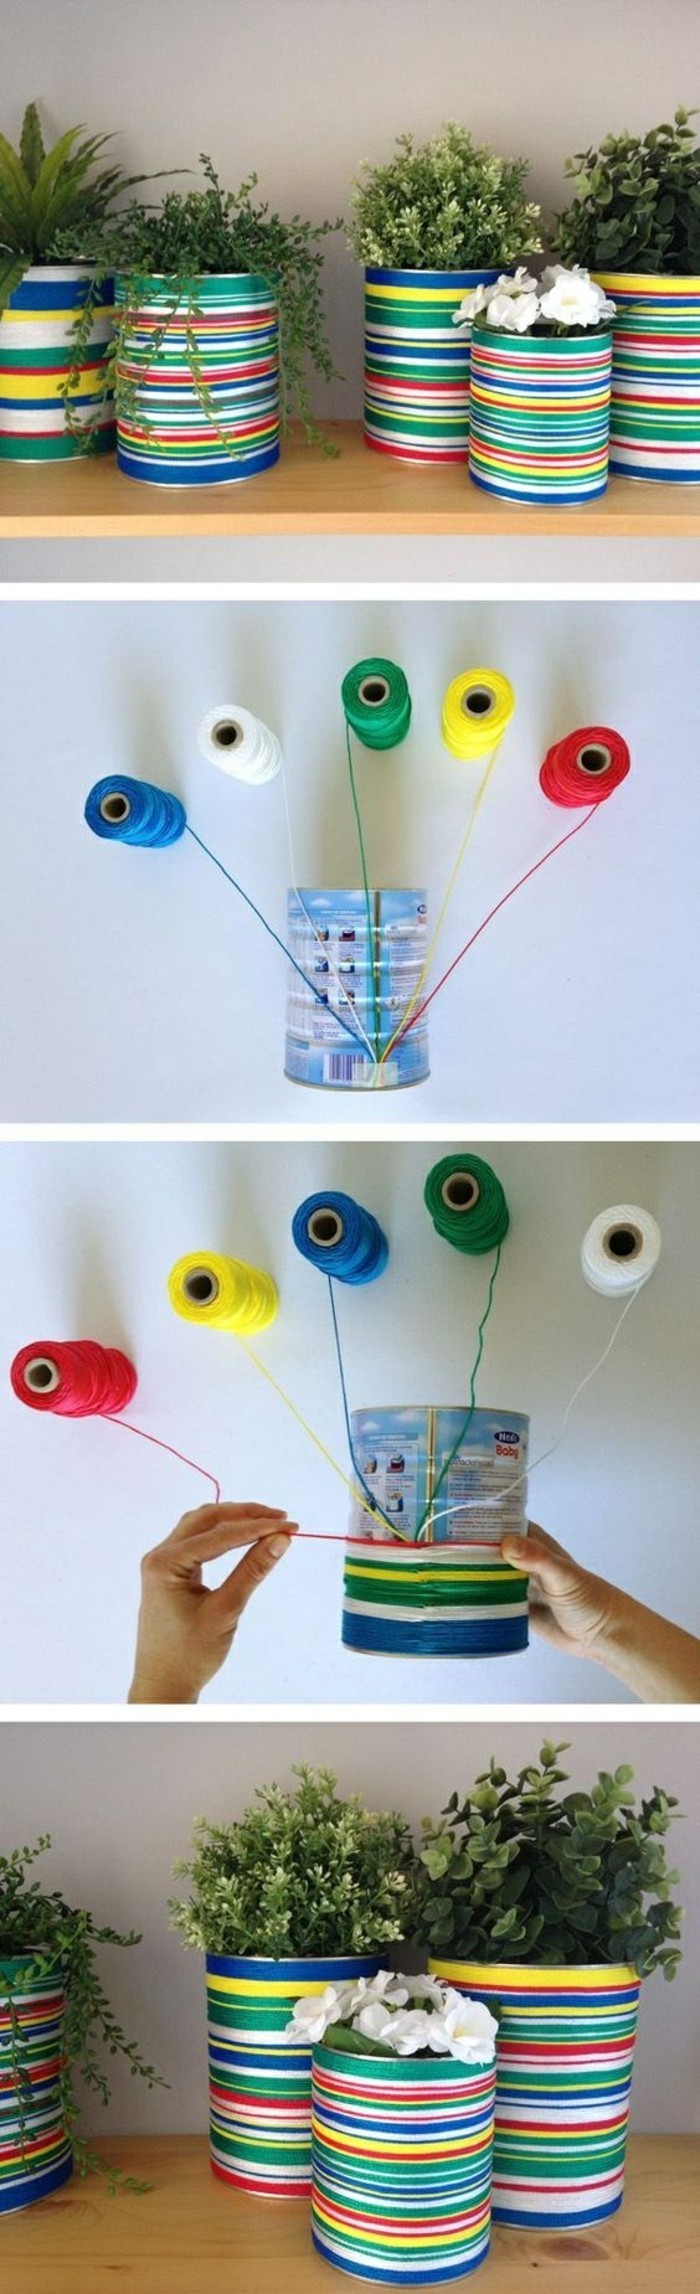 रचनात्मक शिल्प-विचारों-बर्तन बंद टिन के डिब्बे धागा-इन-अलग-रंग